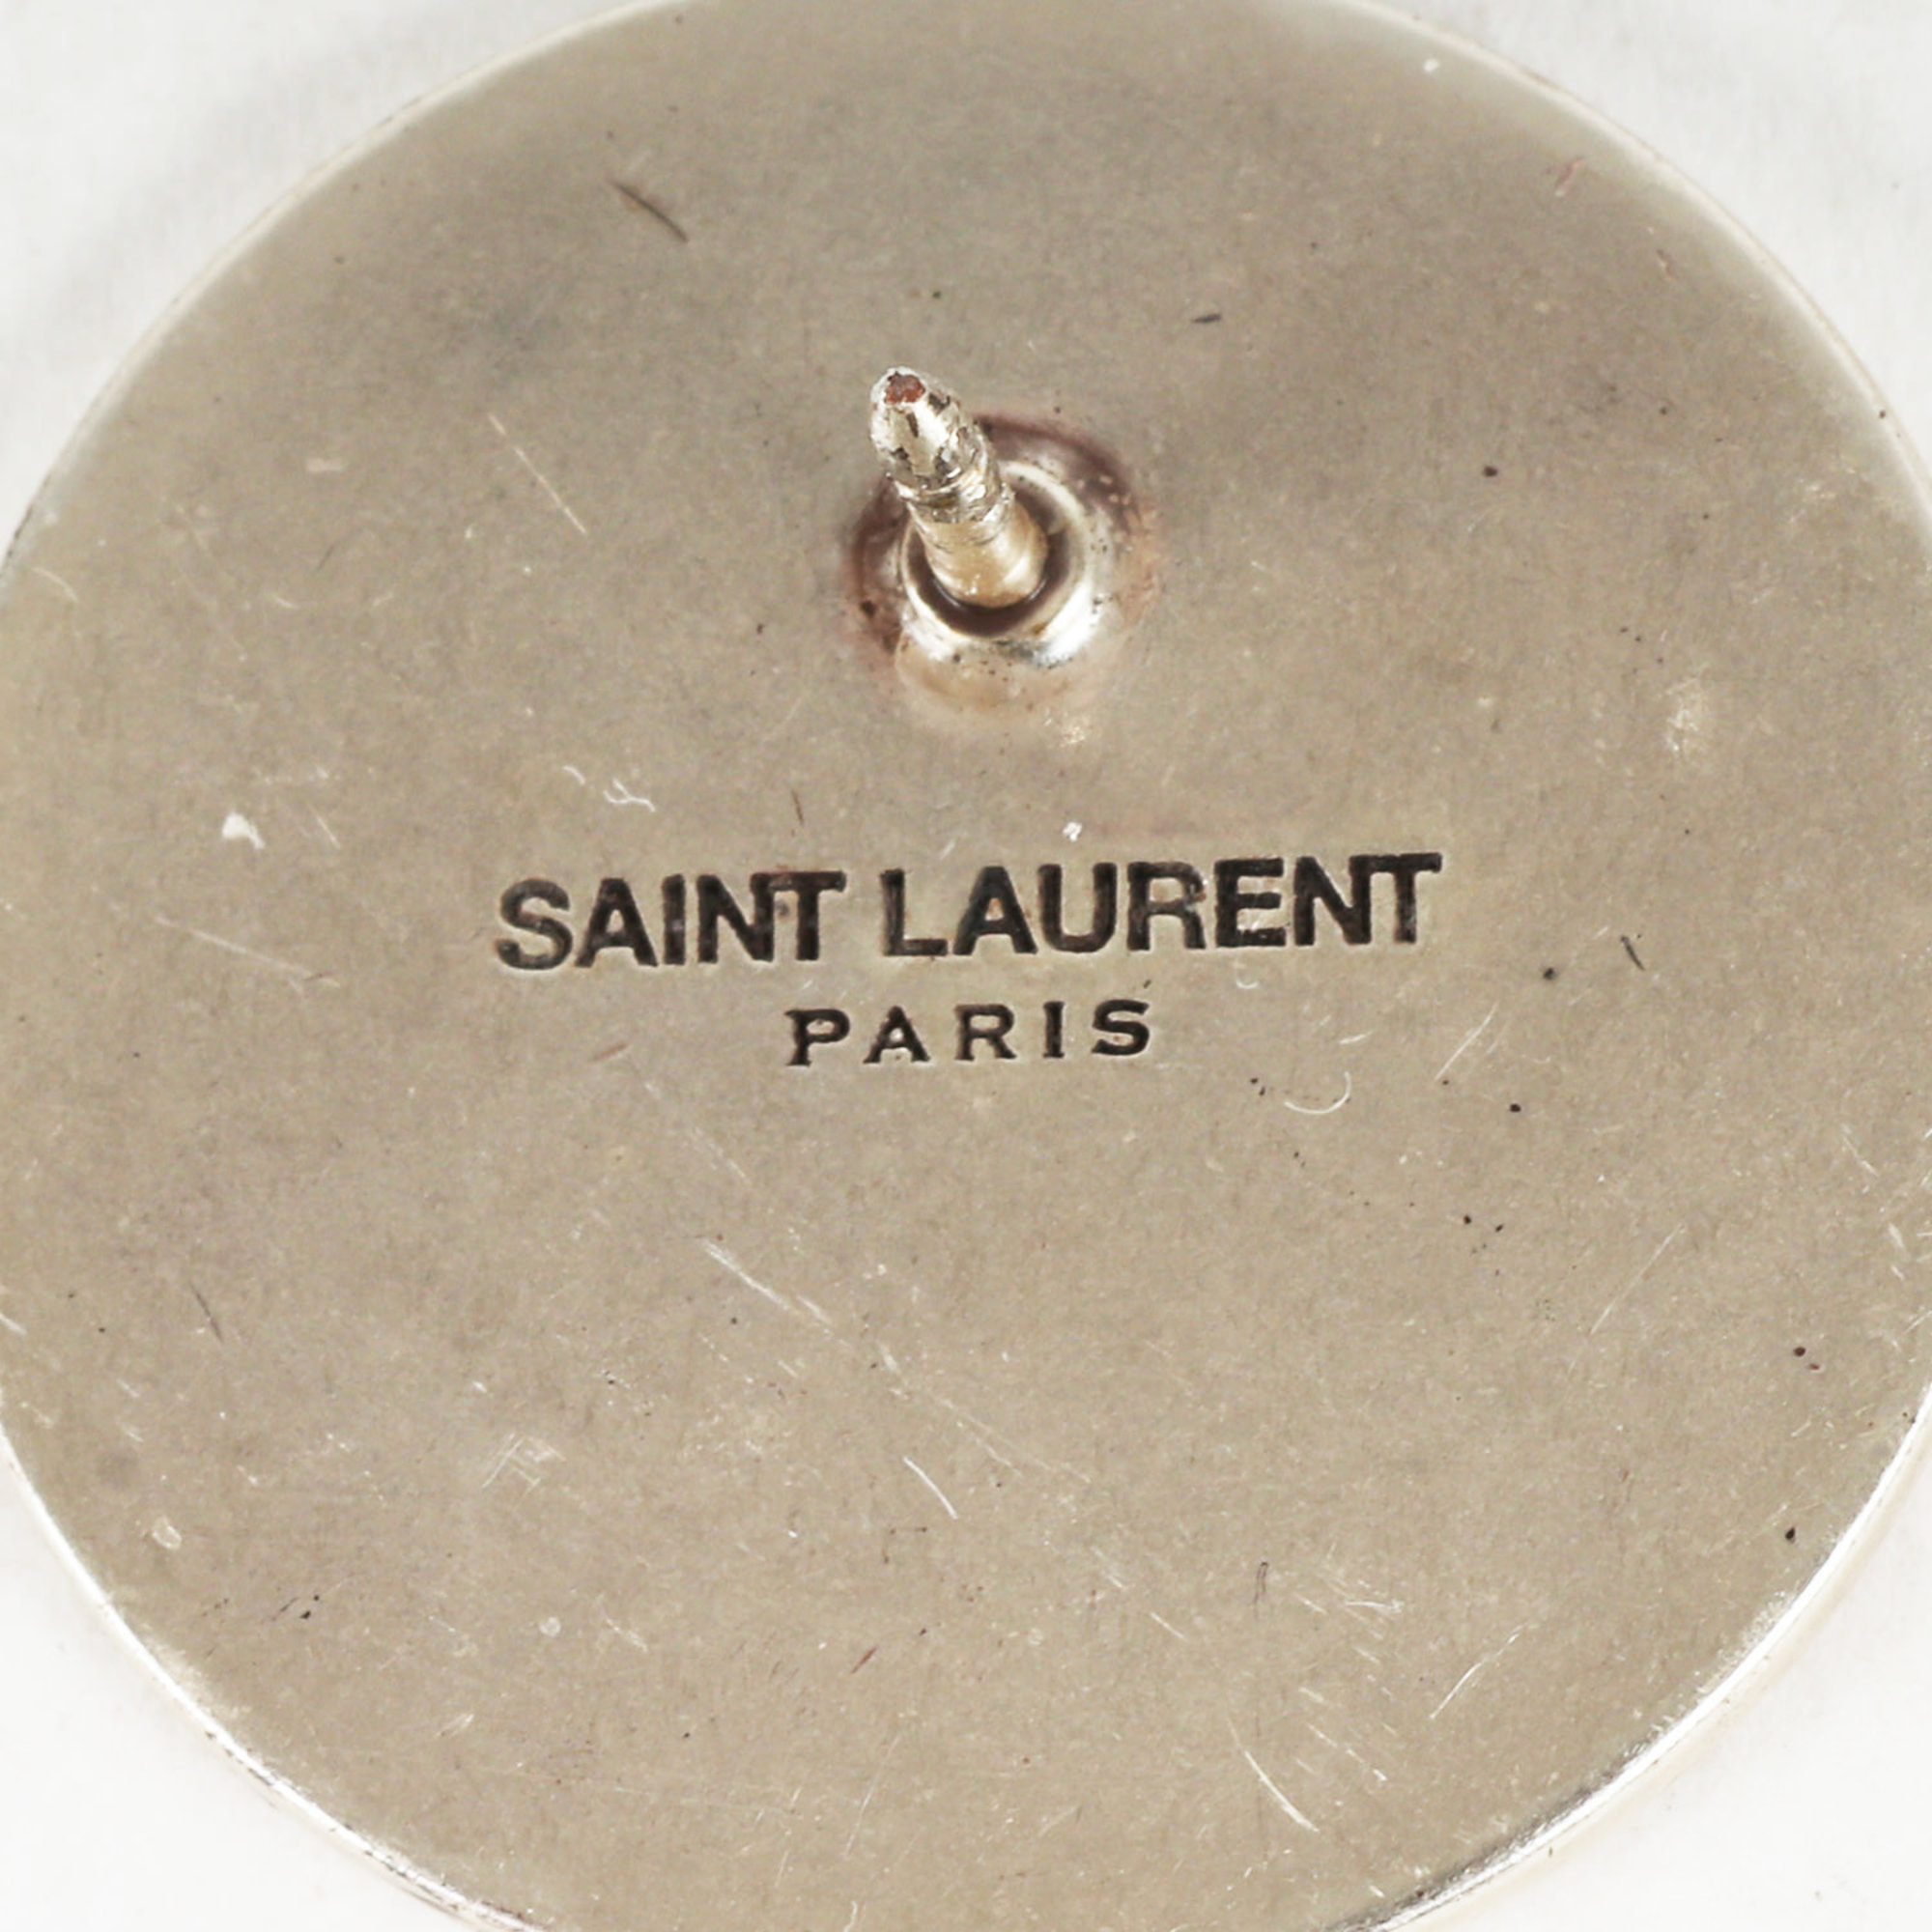 Yves Saint Laurent SAINT LAURENT PARIS VIENS DANS UN COIN. OUBLIONS TOUT Design Pins Pin Badge Pink Silver Goods Accessories Men's